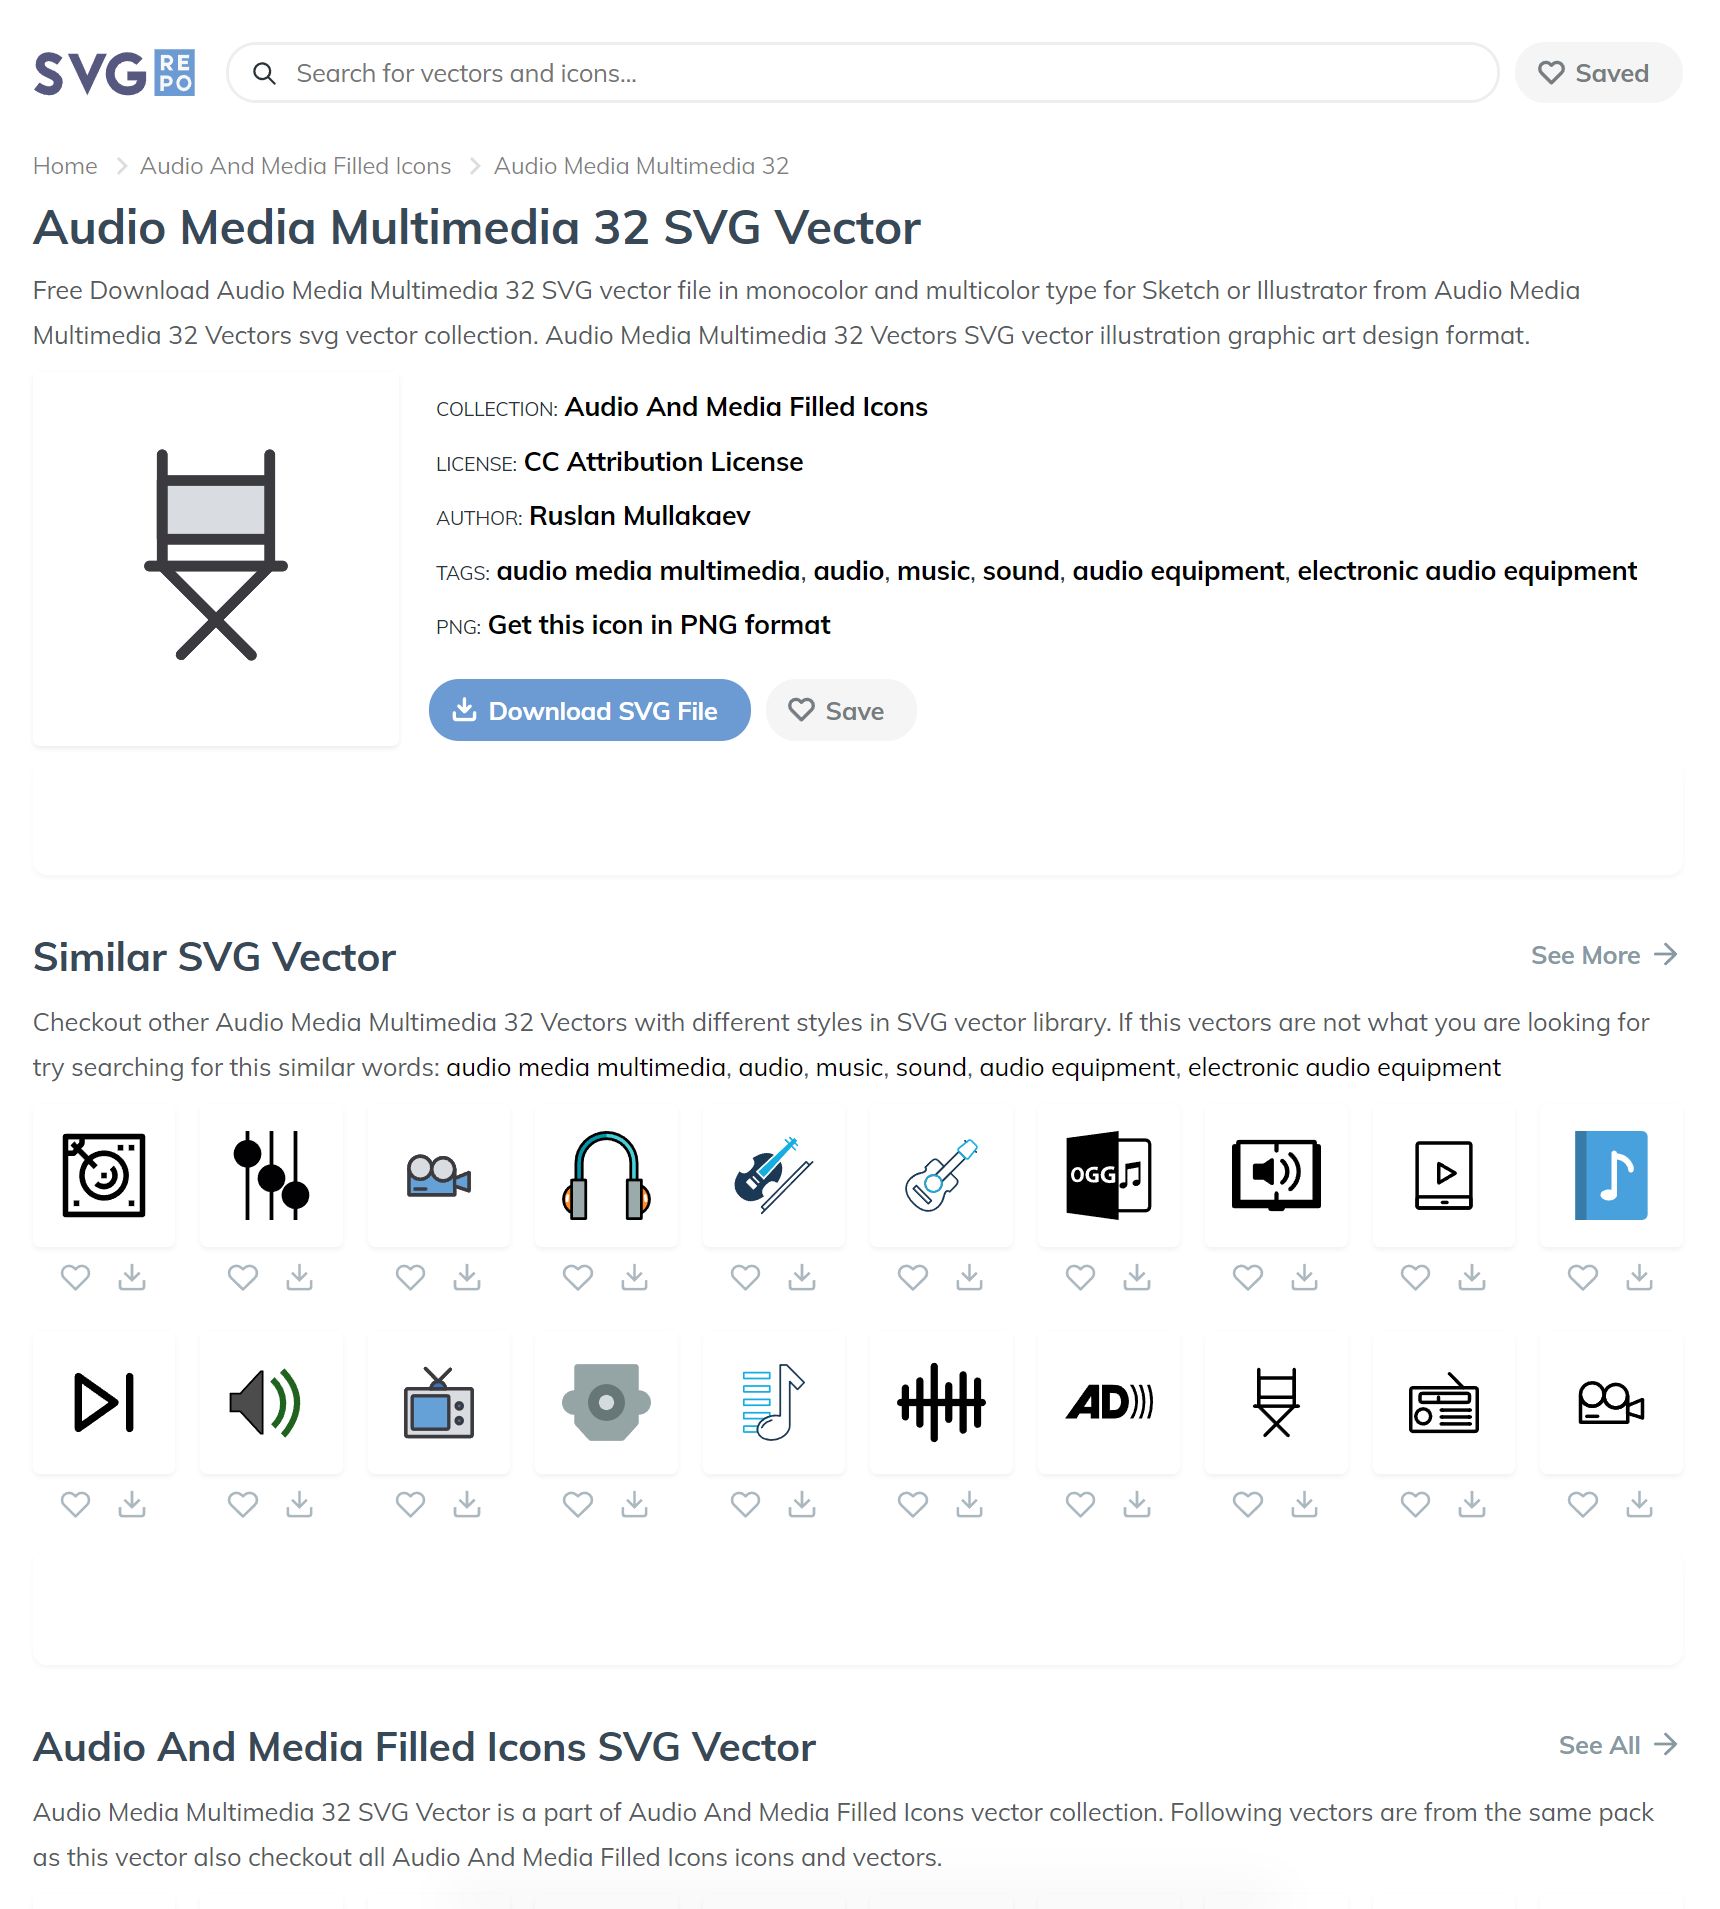 Slash Forward Vector SVG Icon - SVG Repo